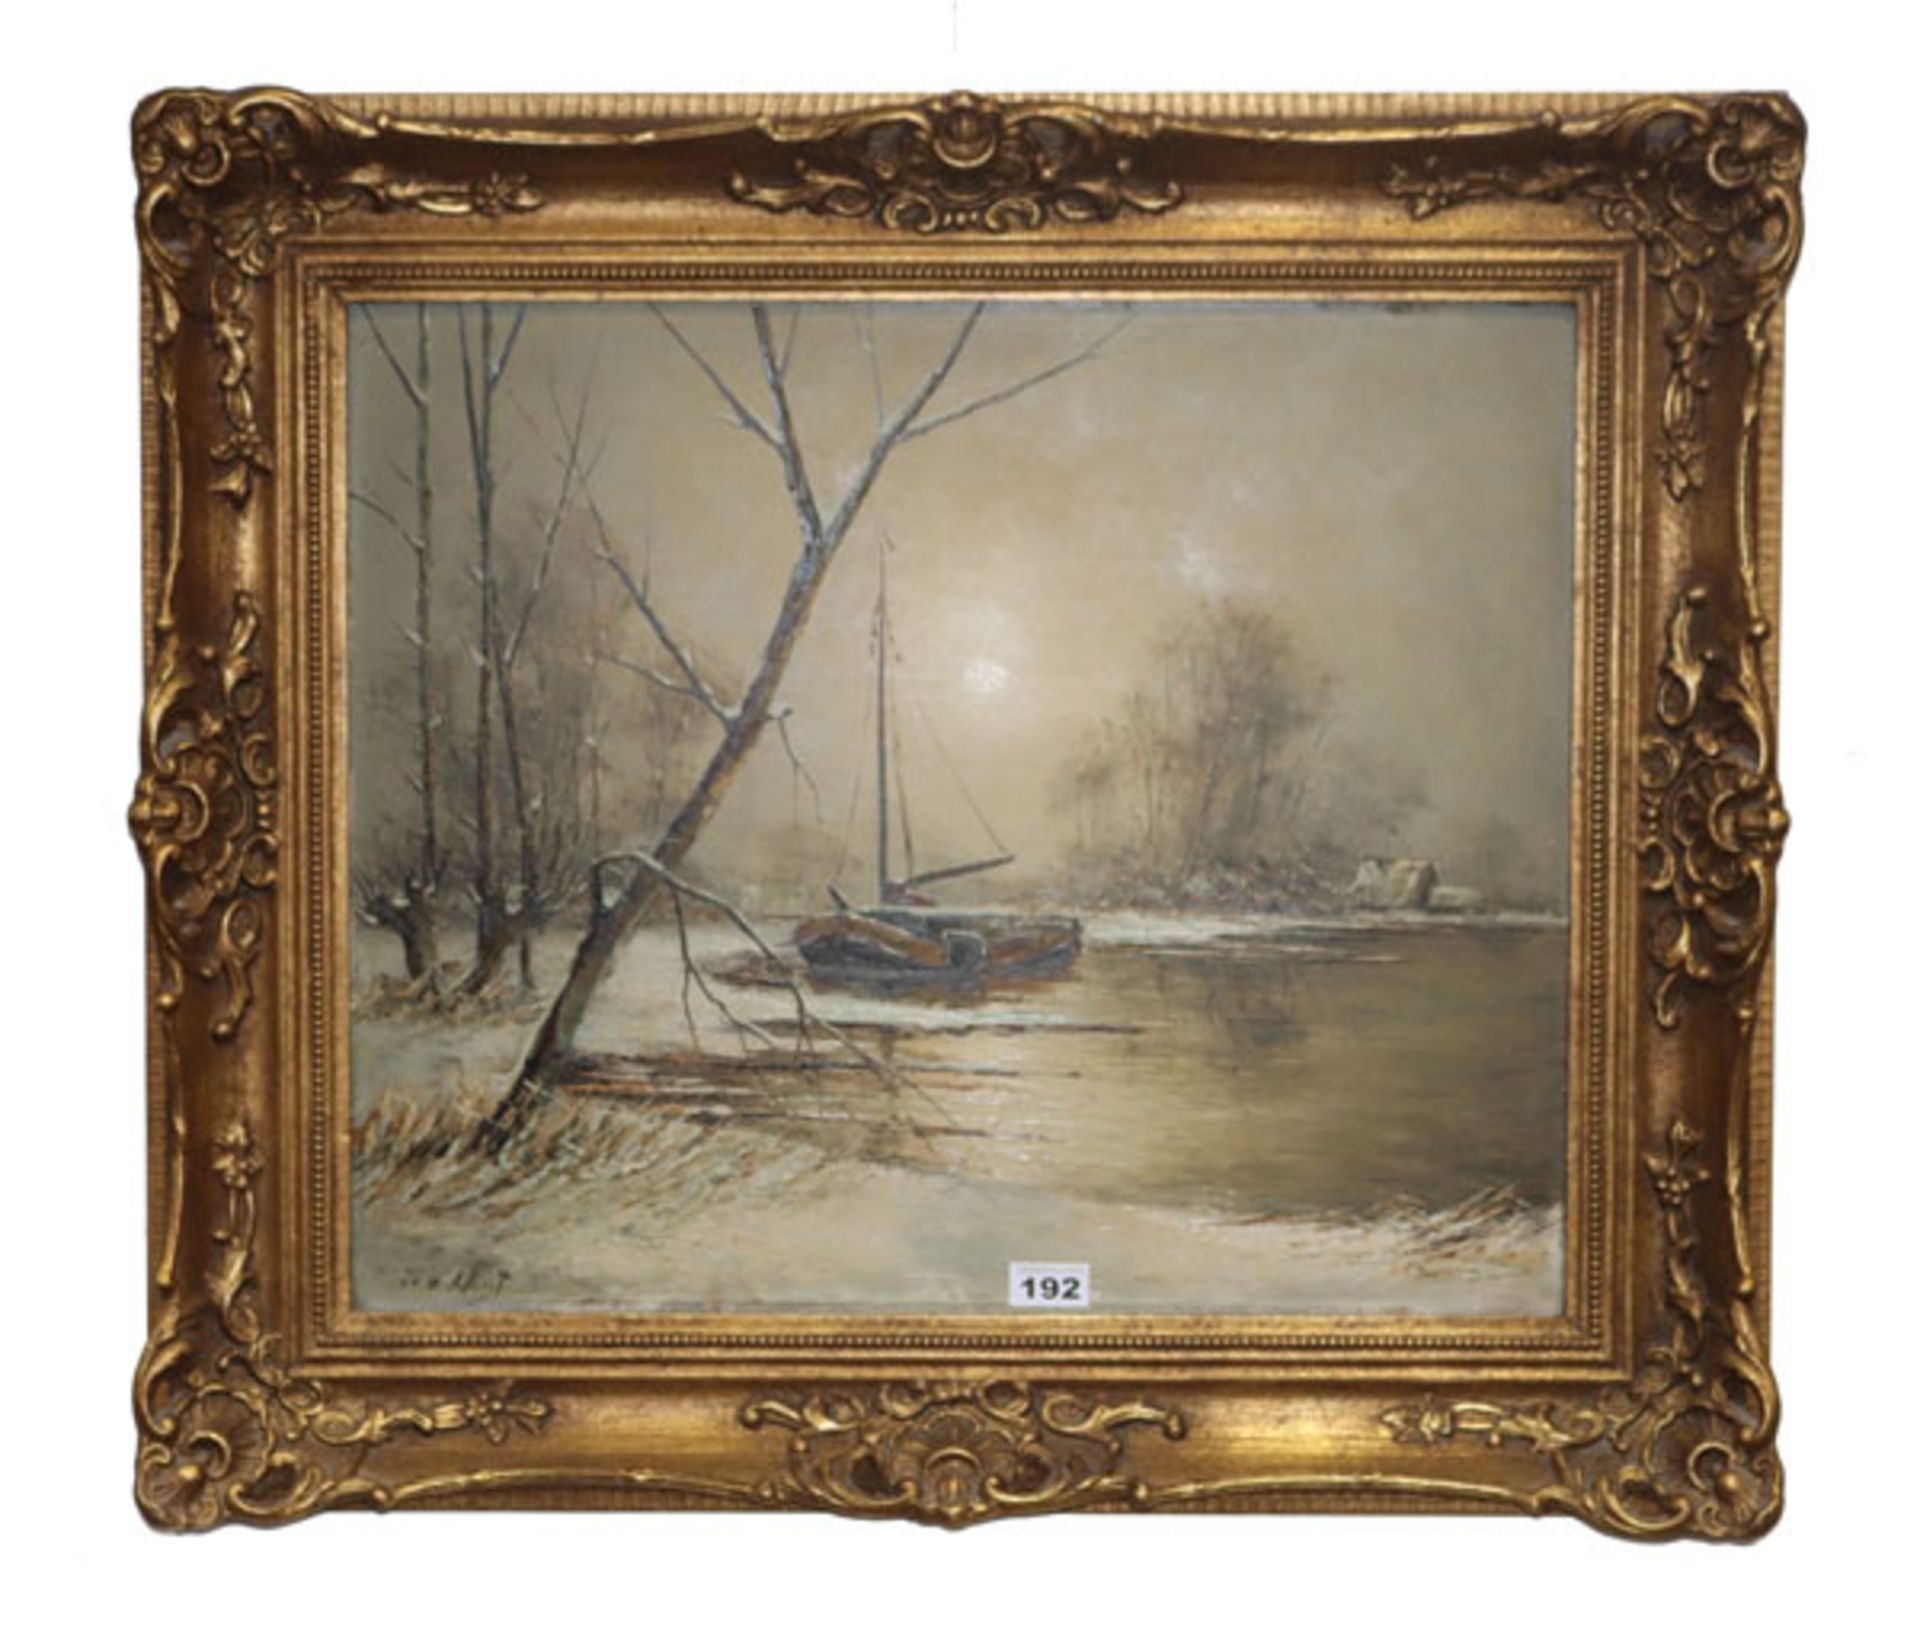 Gemälde ÖL/Malkarton 'Seeufer im Winter mit Segelboot', signiert W. v. Kleist, gerahmt, incl. Rahmen